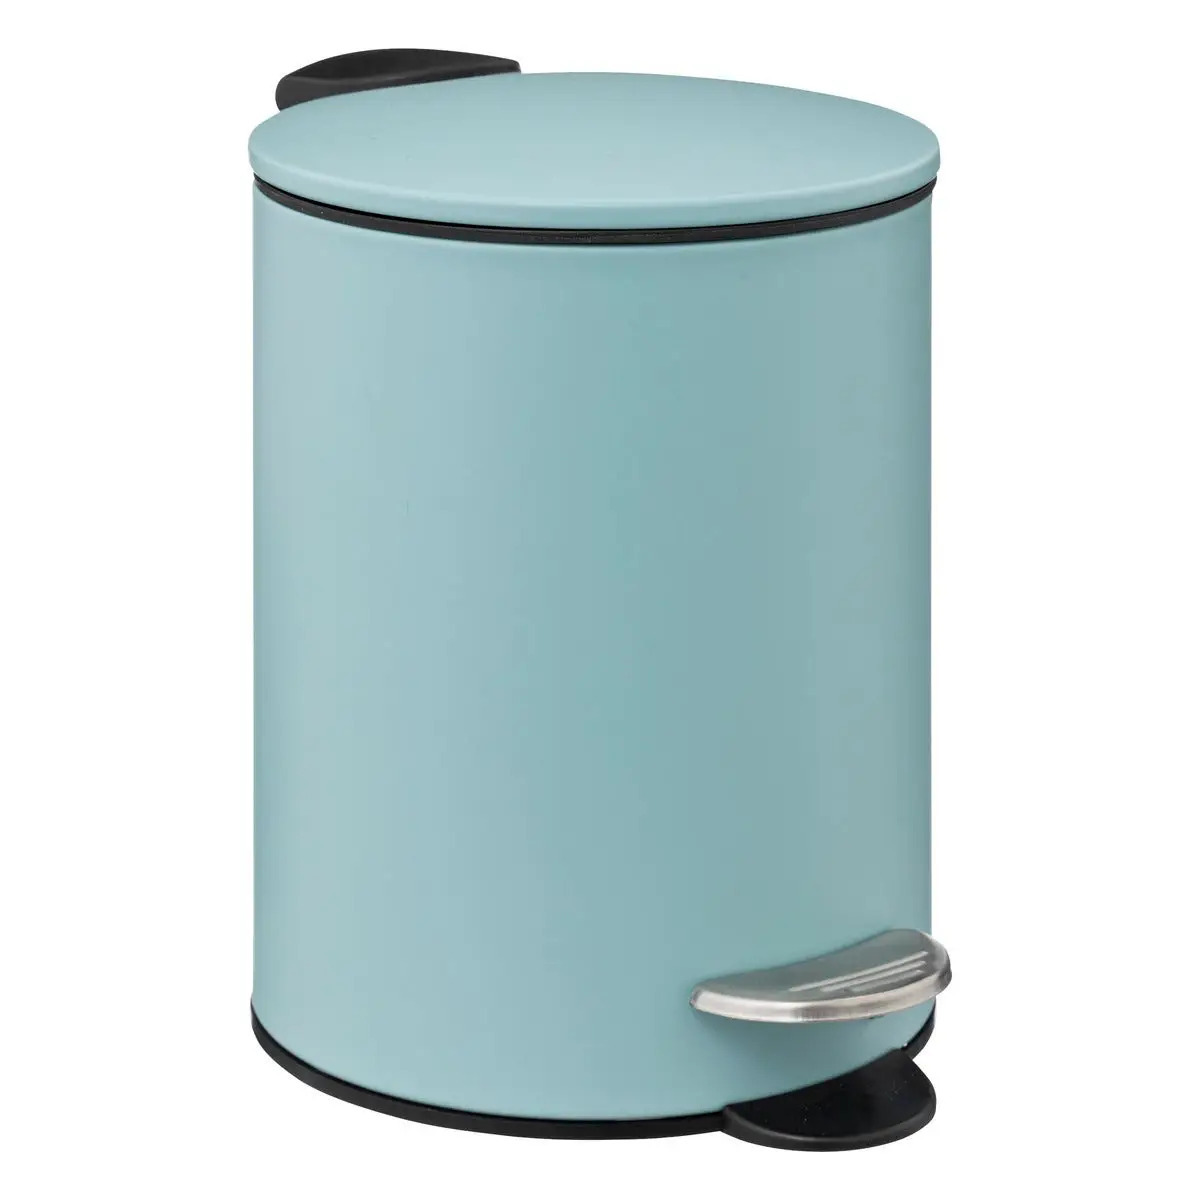 Prullenbak-pedaalemmer metaal ijsblauw 3 liter 16 x 25 cm Badkamer-toilet